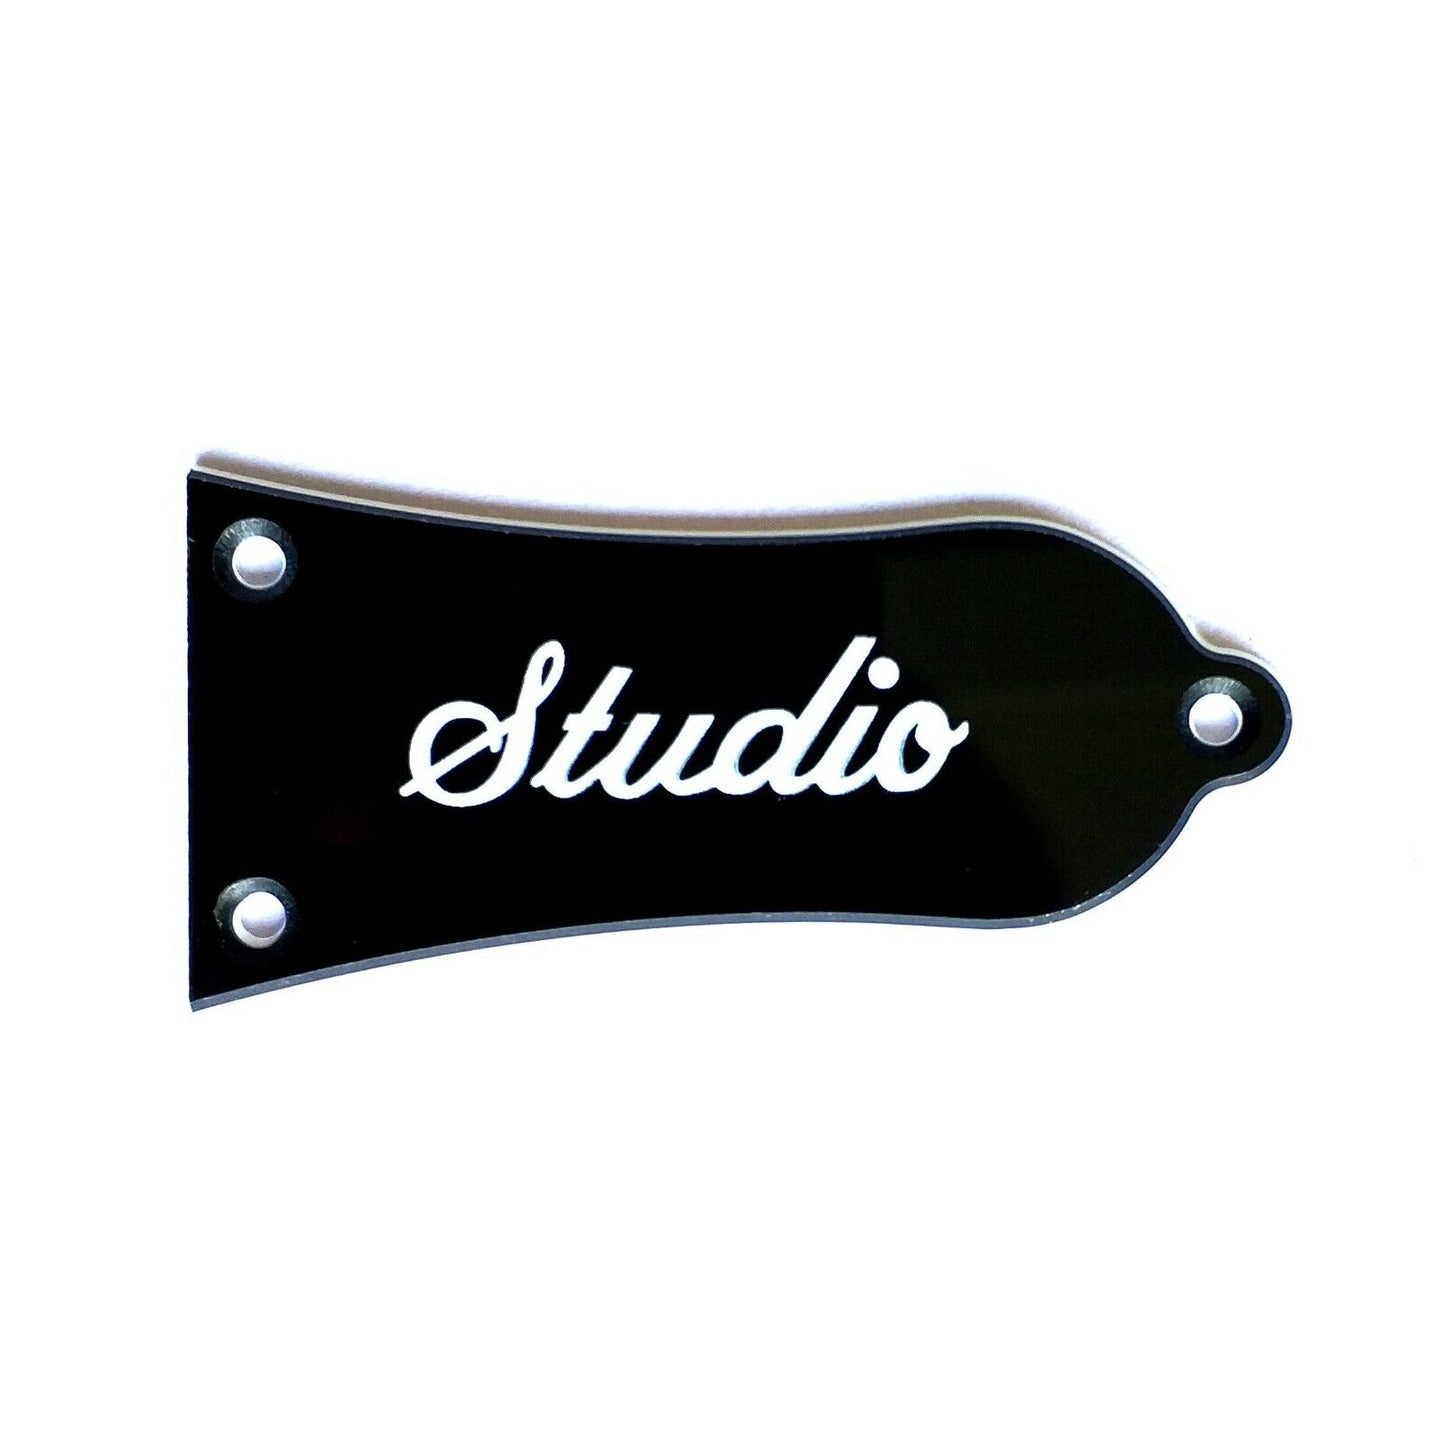 1 Piece Guitar Truss Rod Cover Fit Epiphone Les Paul Standard,Studio,SG